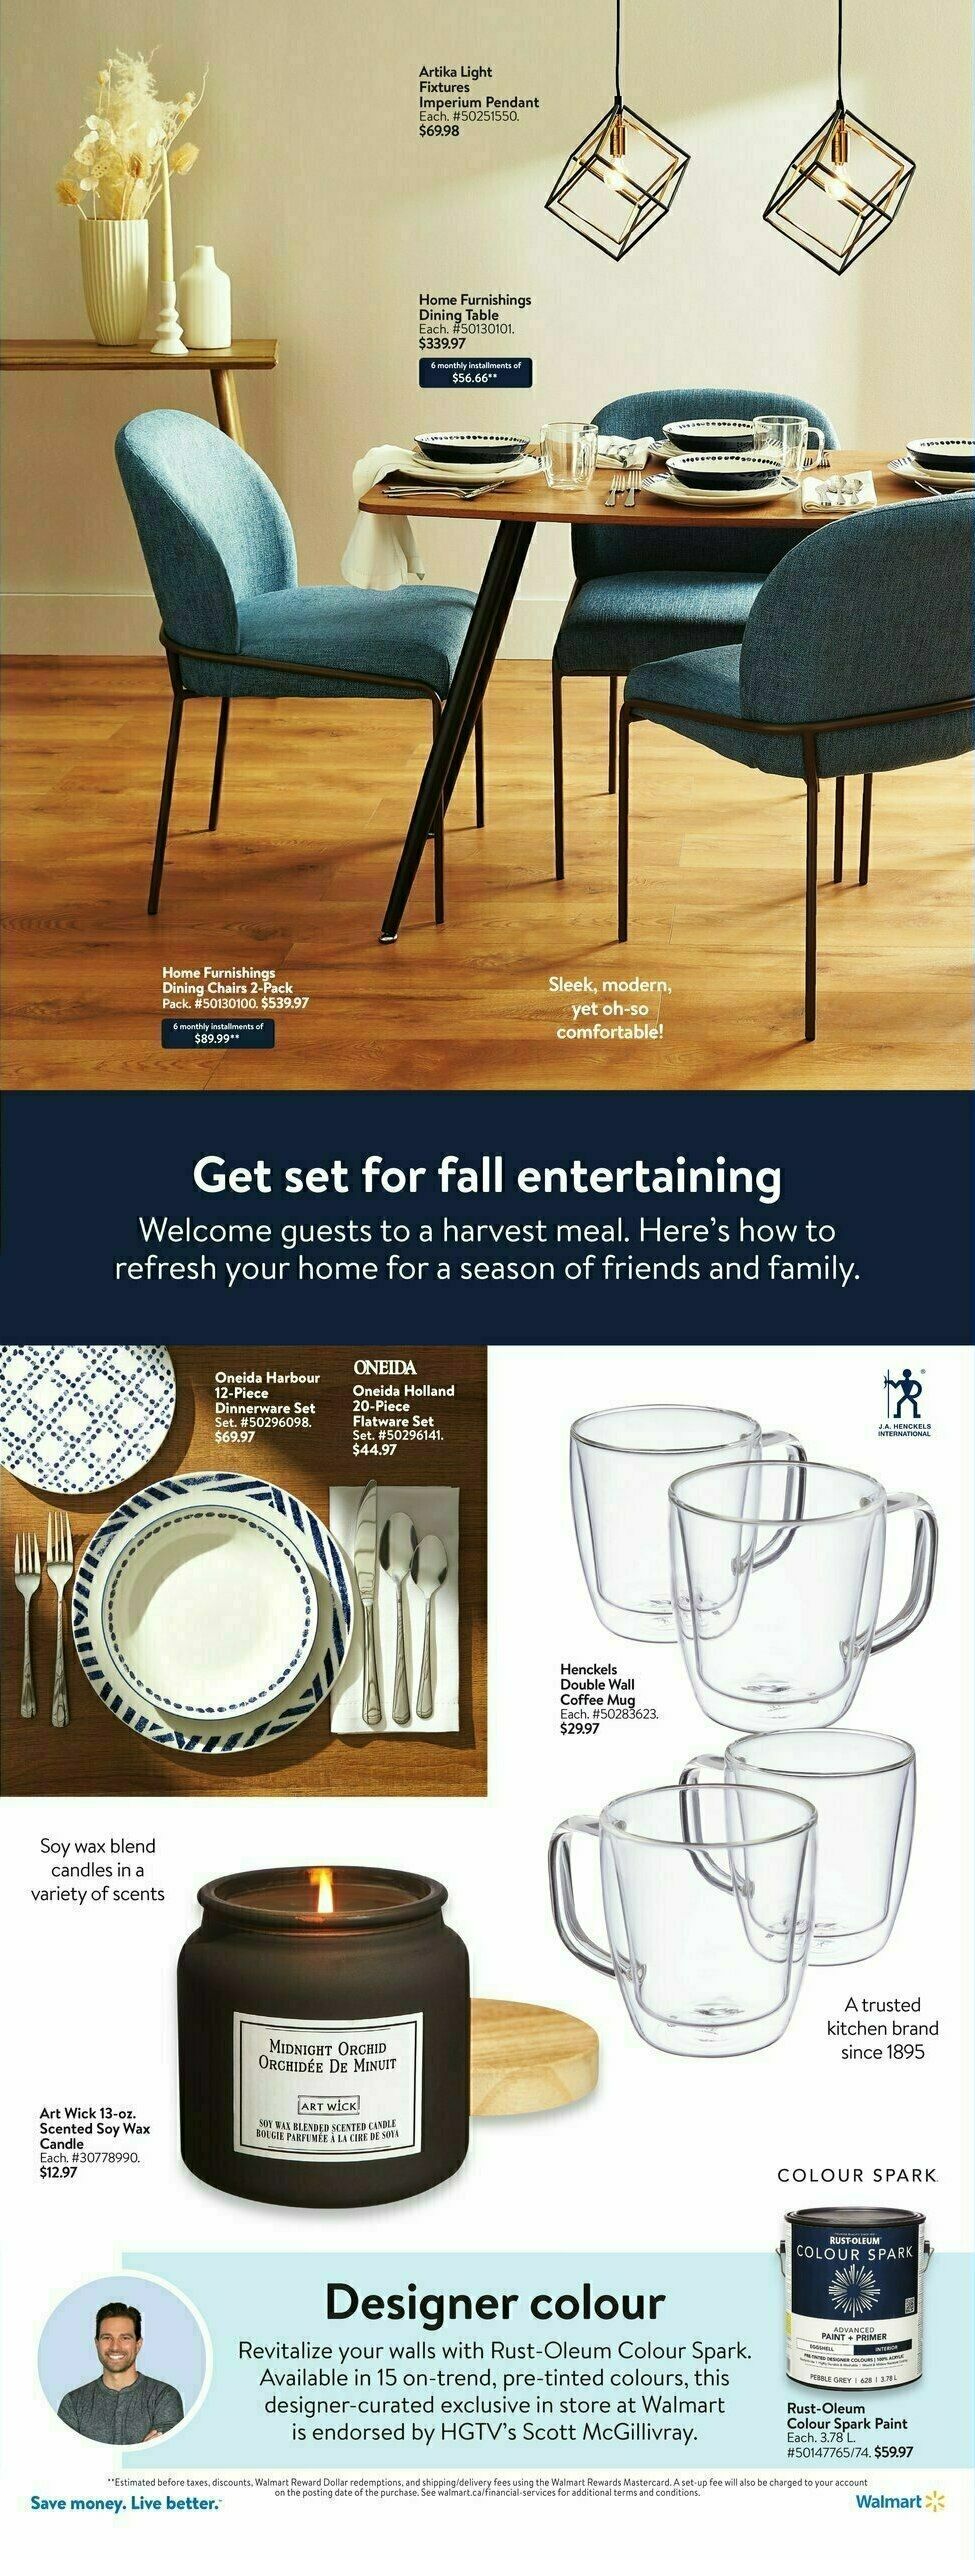 Walmart Spotlight Flyer from October 19